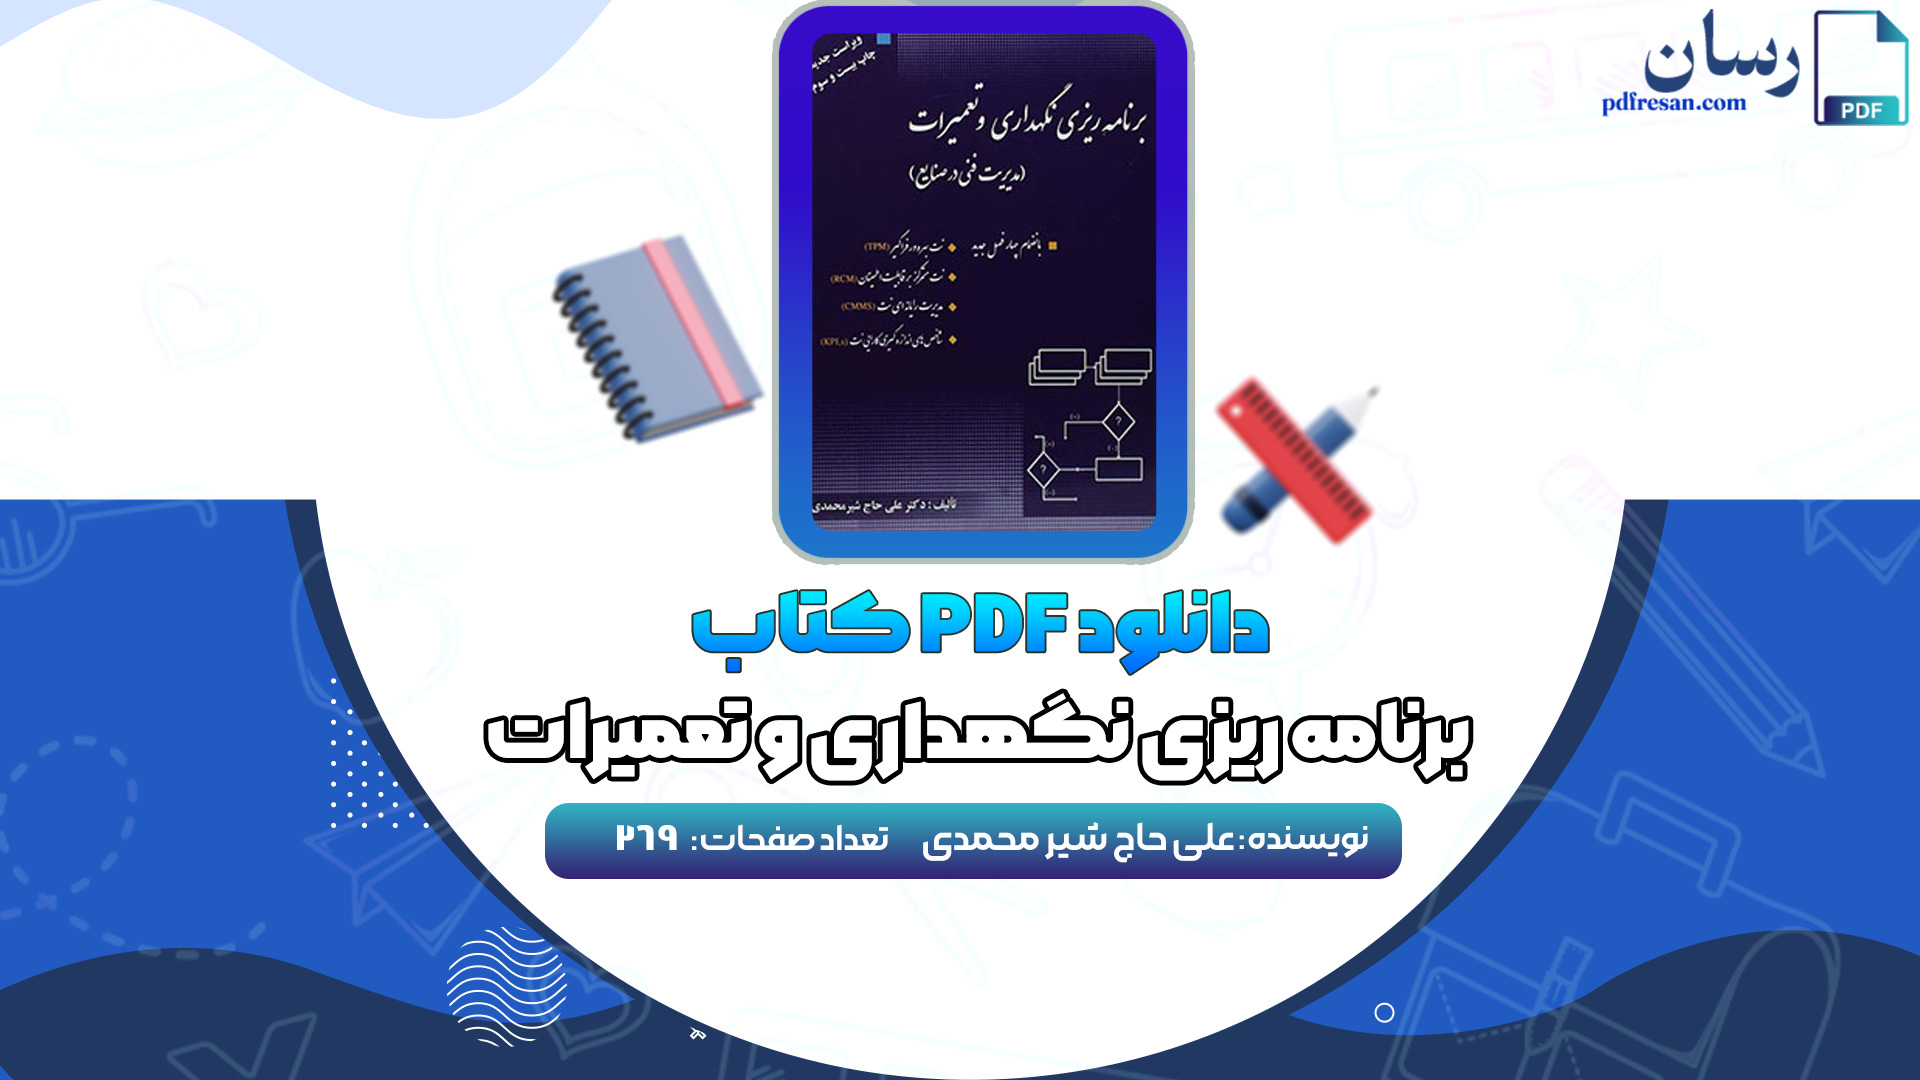 دانلود کتاب پی دی اف کتاب برنامه ریزی نگهداری و تعمیرات علی حاج شیرمحمدی PDF